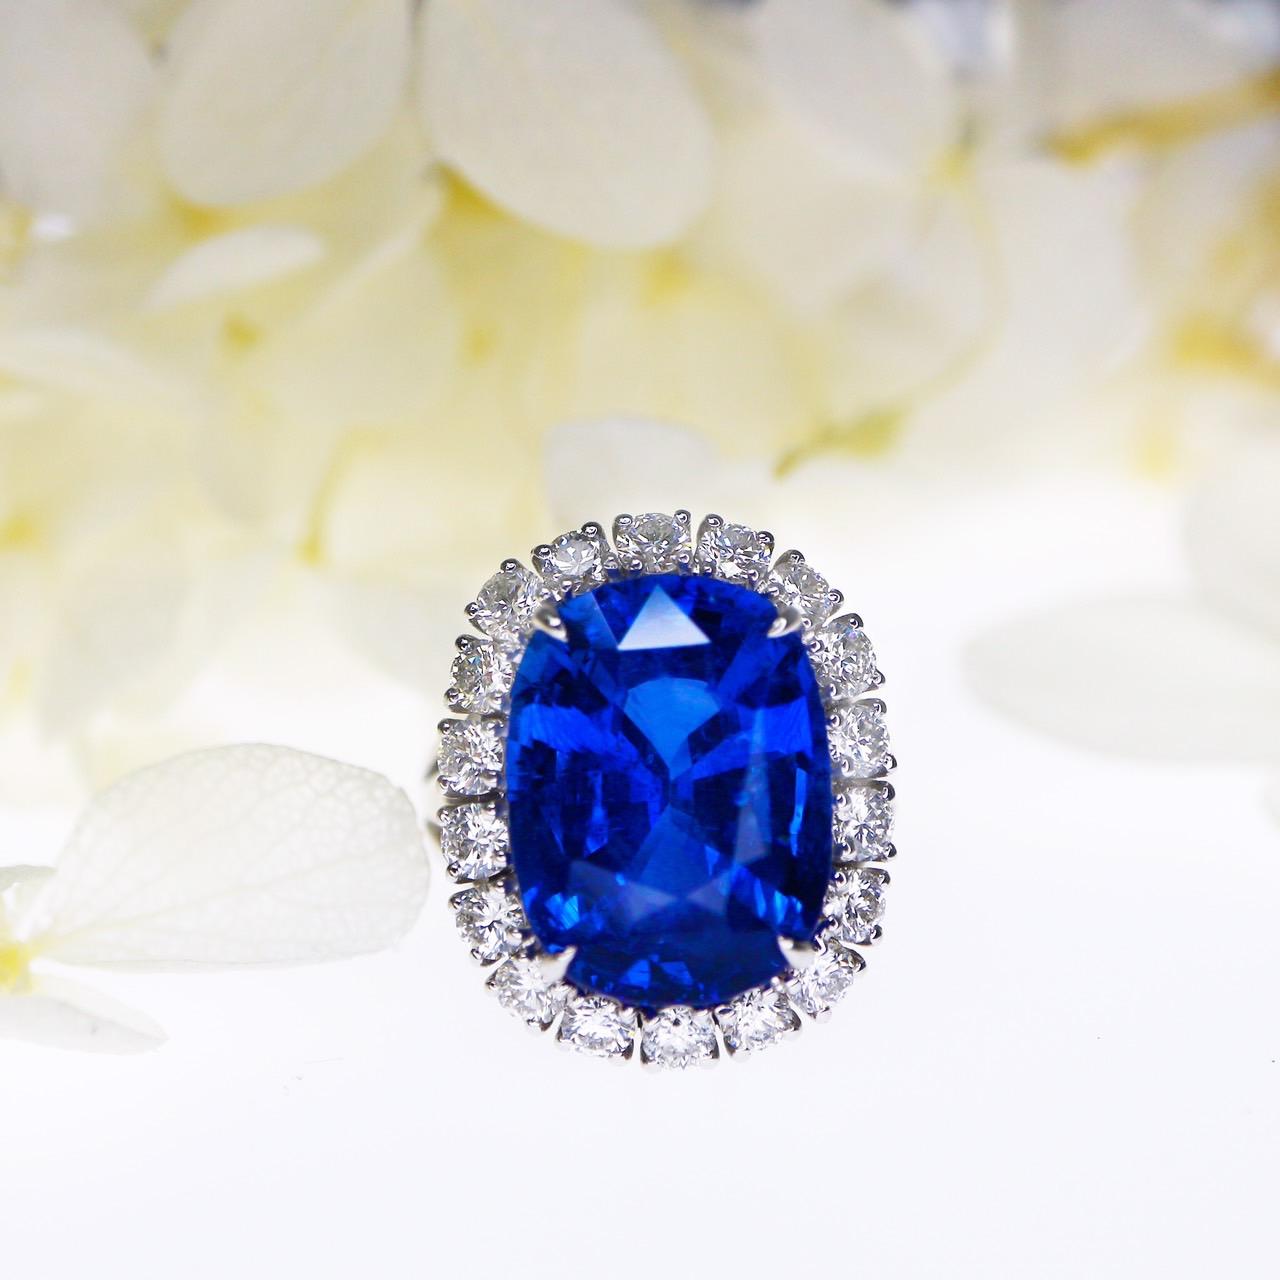 *GIA 18K 10.26 ct Royal Blue Sapphire&Diamonds Antique Art Deco Engagement Ring* (bague de fiançailles)
Saphir bleu royal naturel certifié par la GIA pesant 10,26 ct, serti sur un anneau en or blanc 18 carats en forme de halo avec des diamants